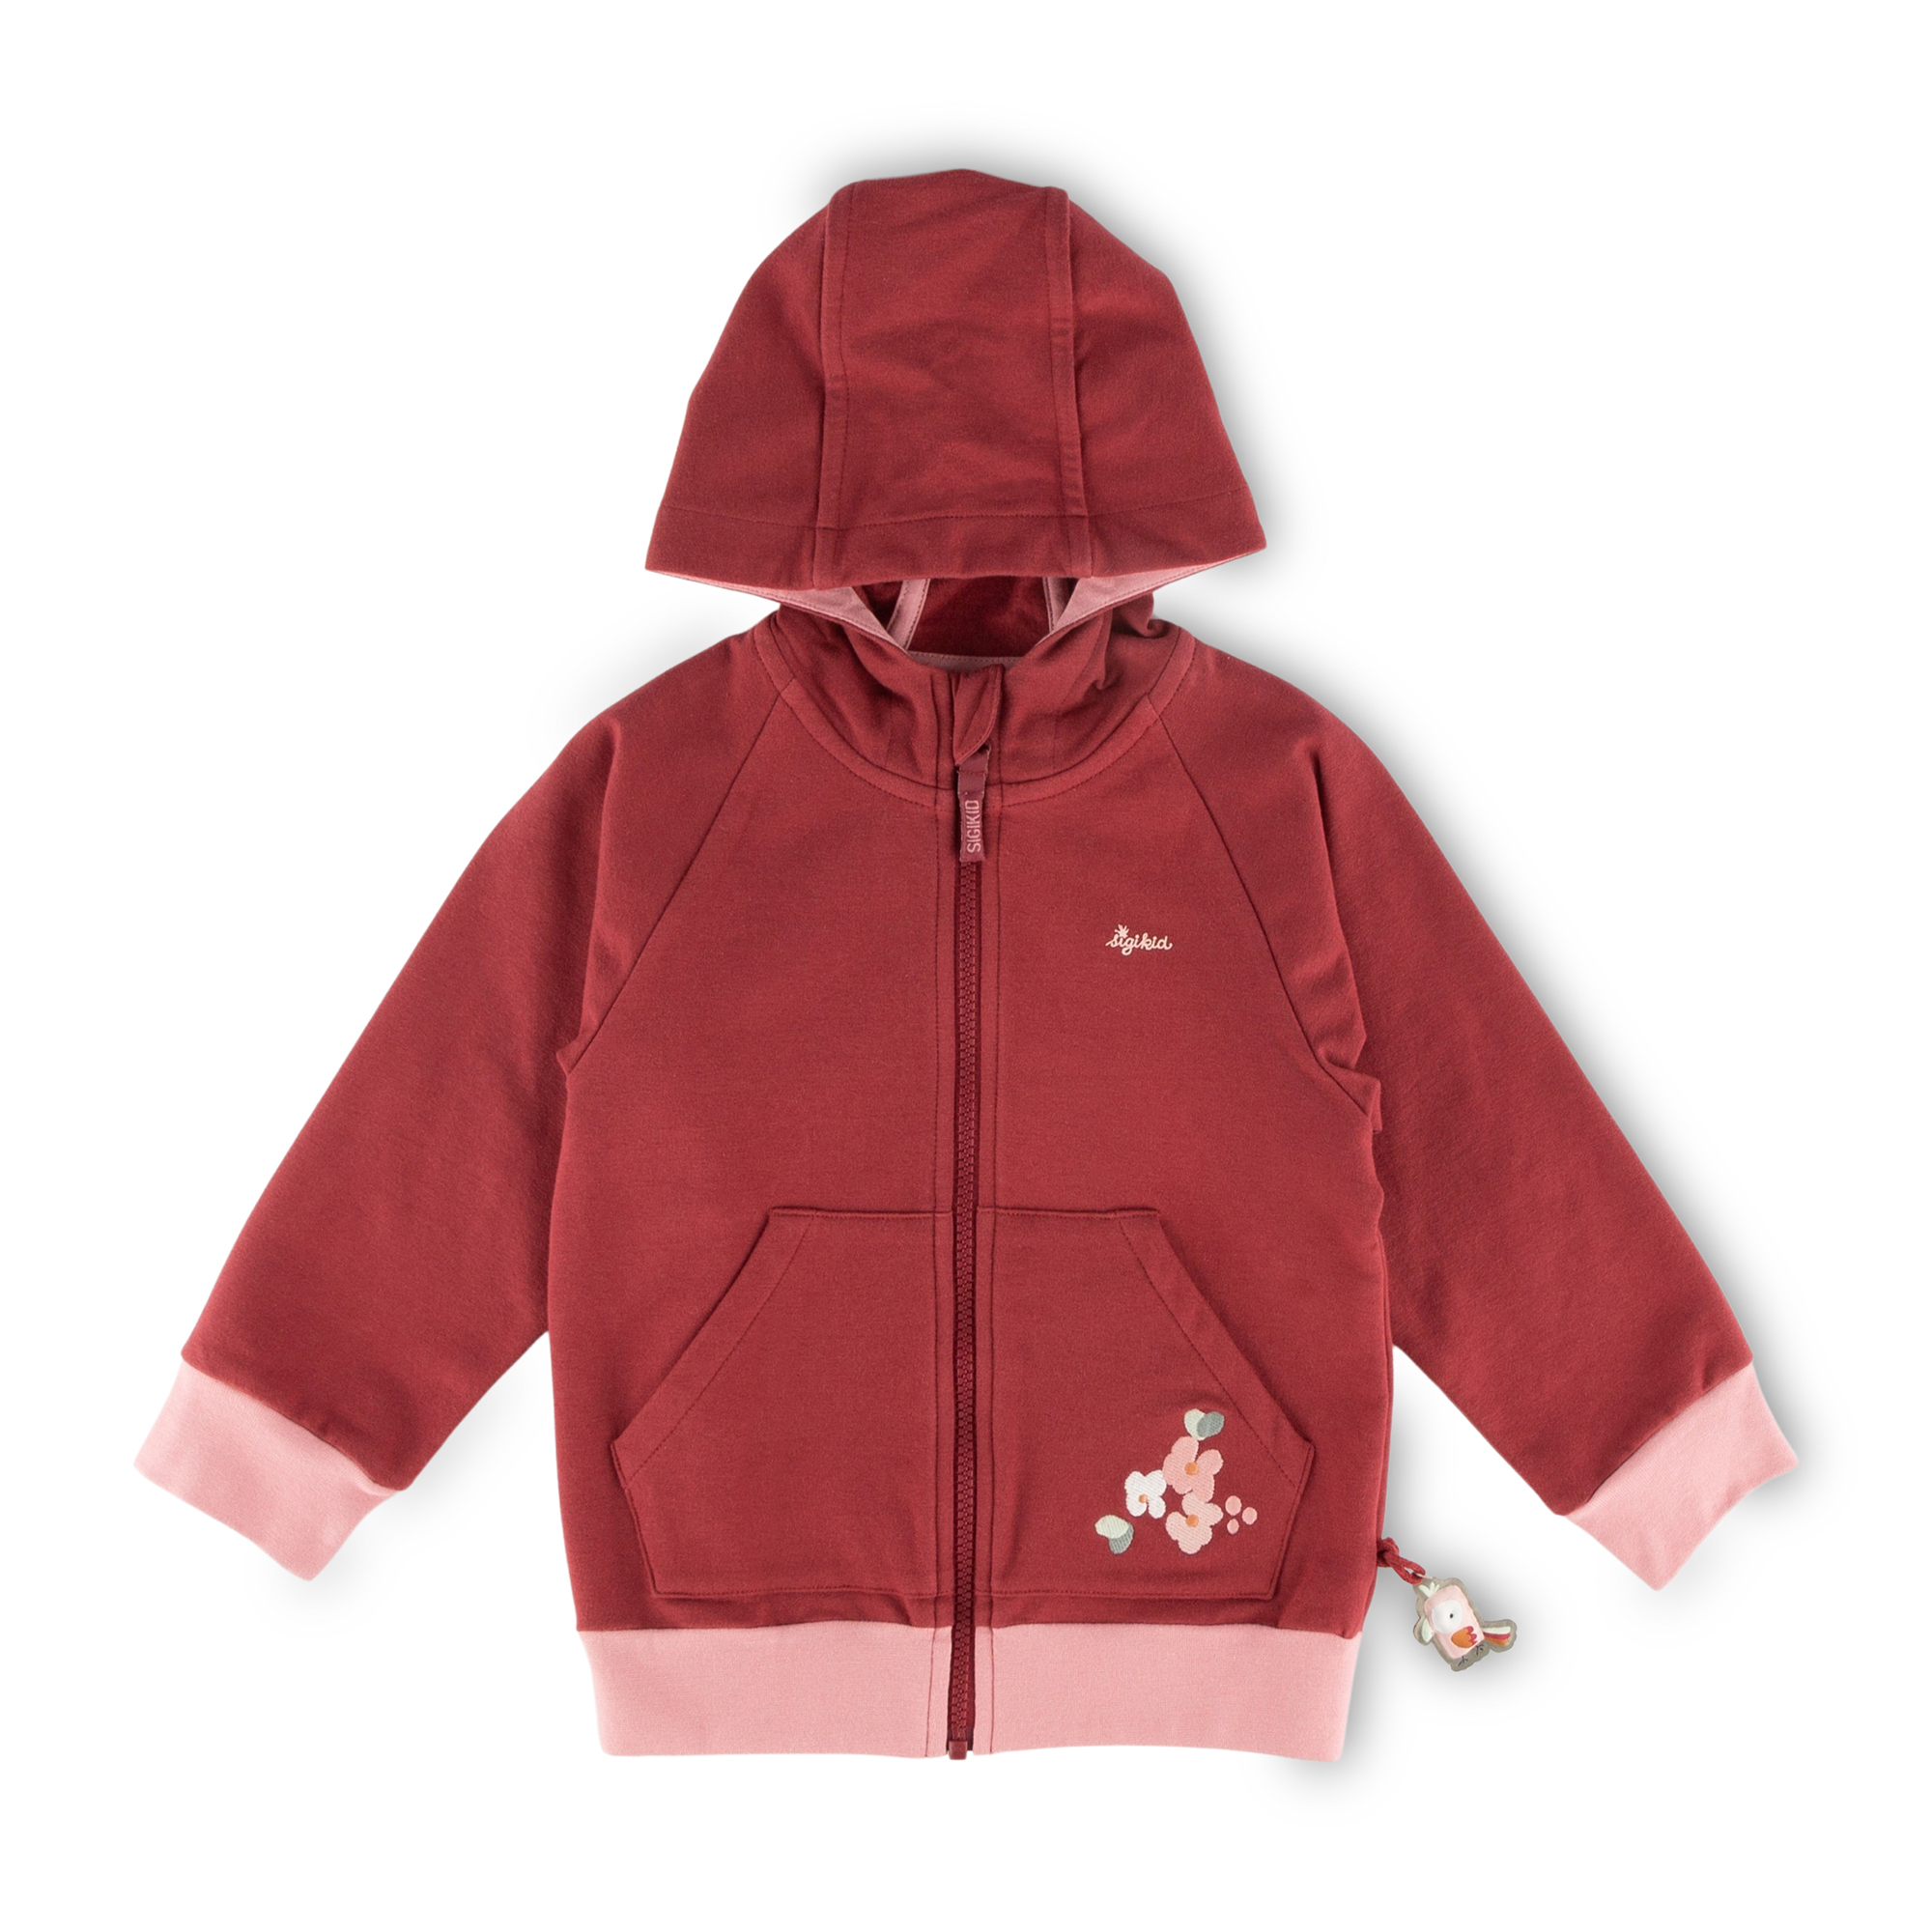 Children's hooded sweat jacket, dark red